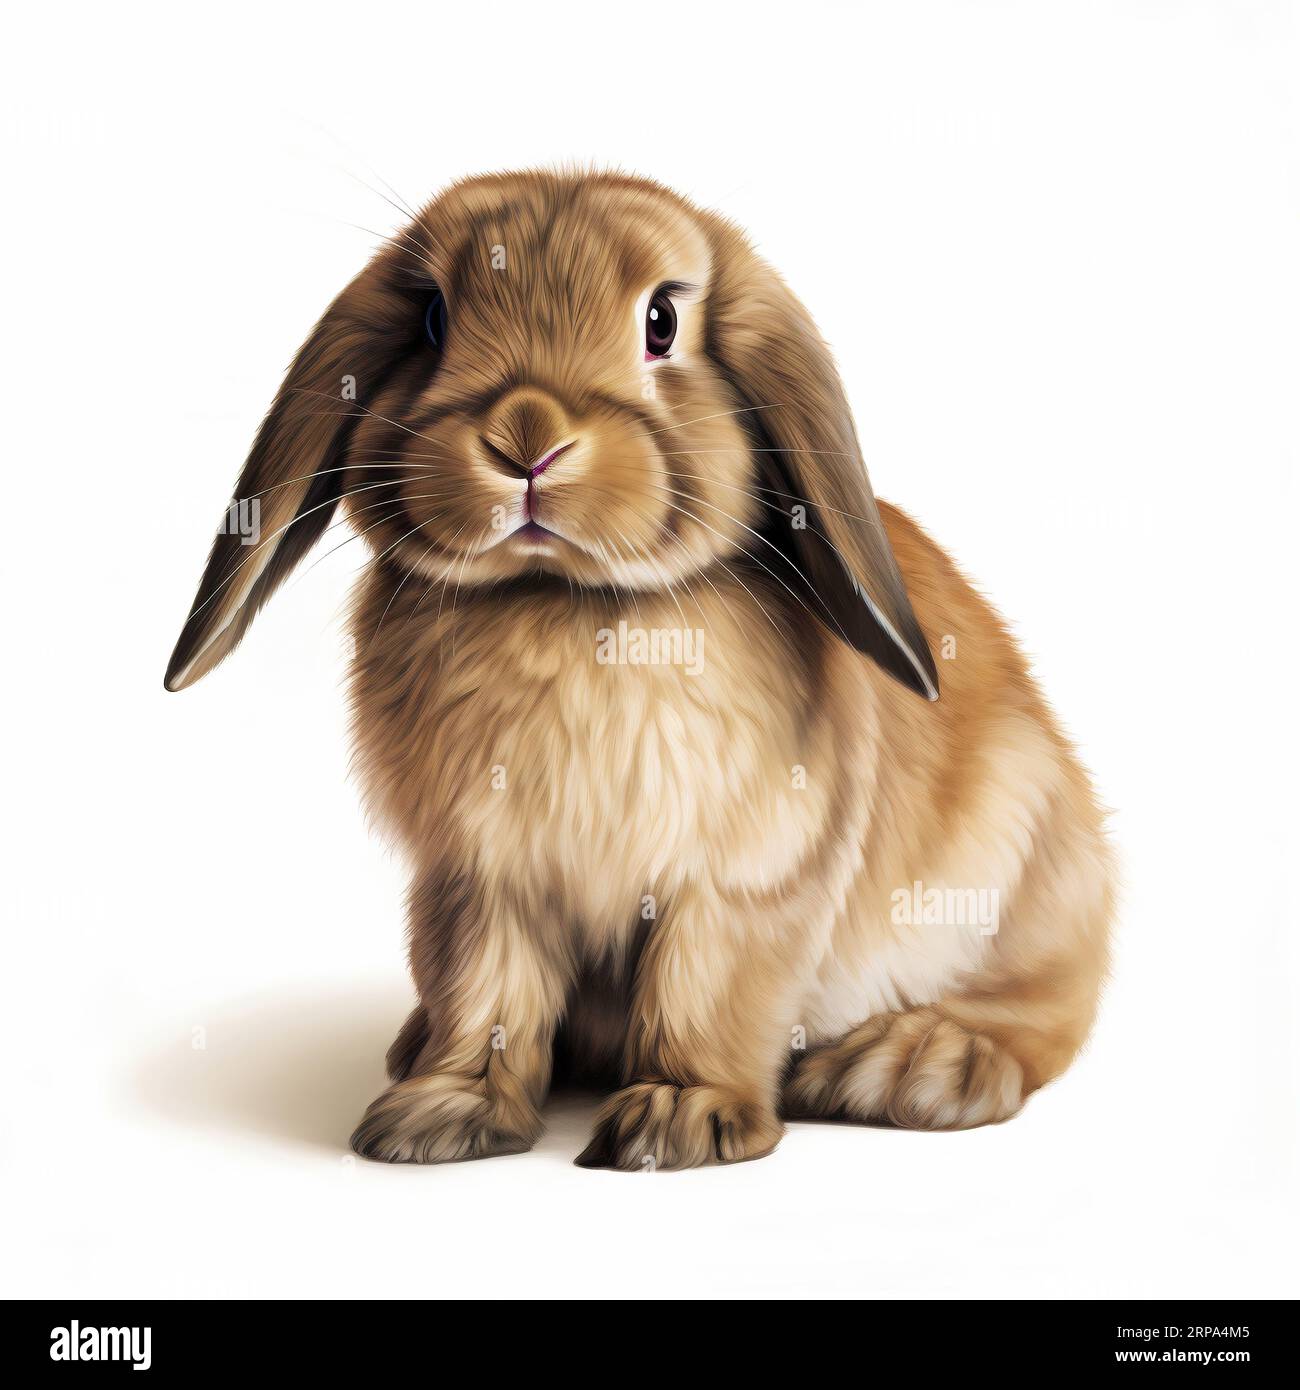 Stockfoto eines entzückenden braunen Kaninchens mit großen Ohren, die in einer niedlichen und entspannten Pose sitzen Stockfoto